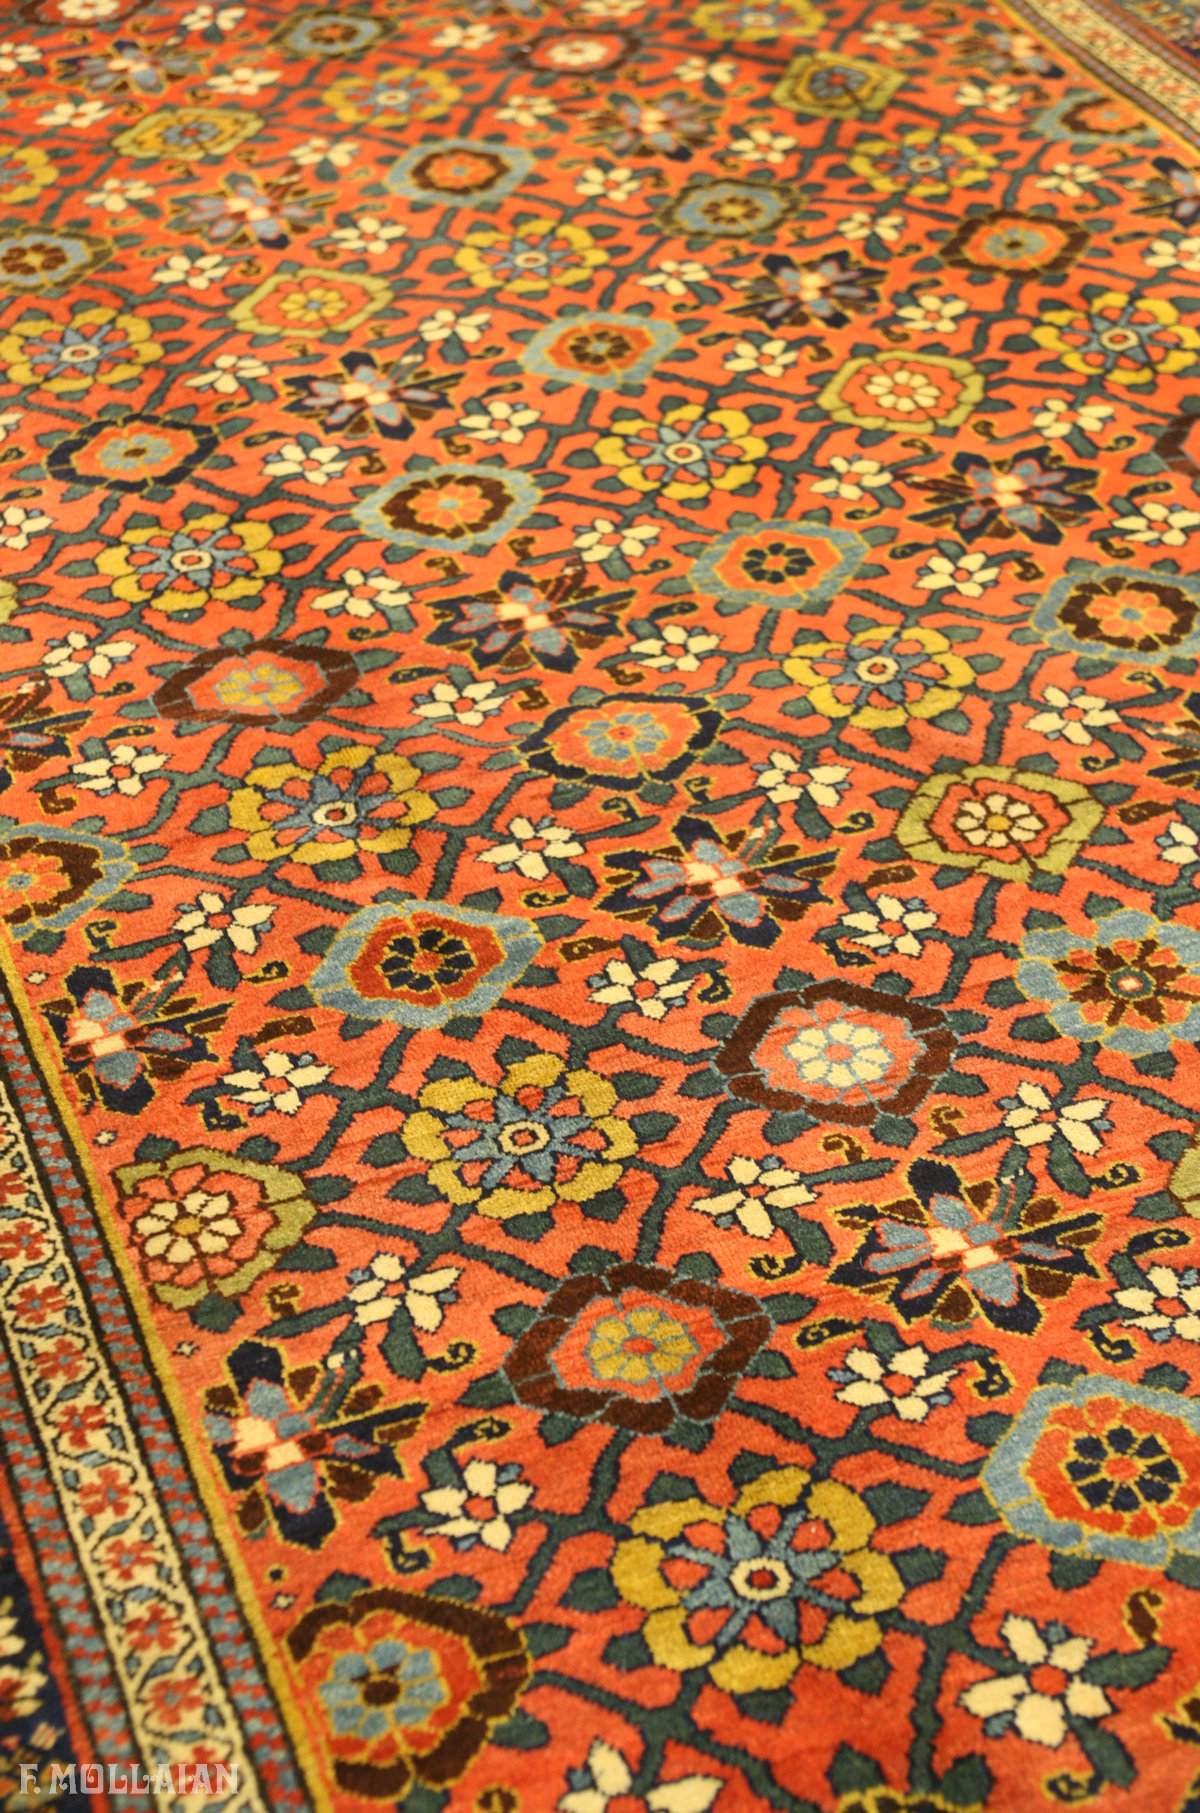 Antique Persian Bijar (Bidjar) Gallery Carpet n°:68290174